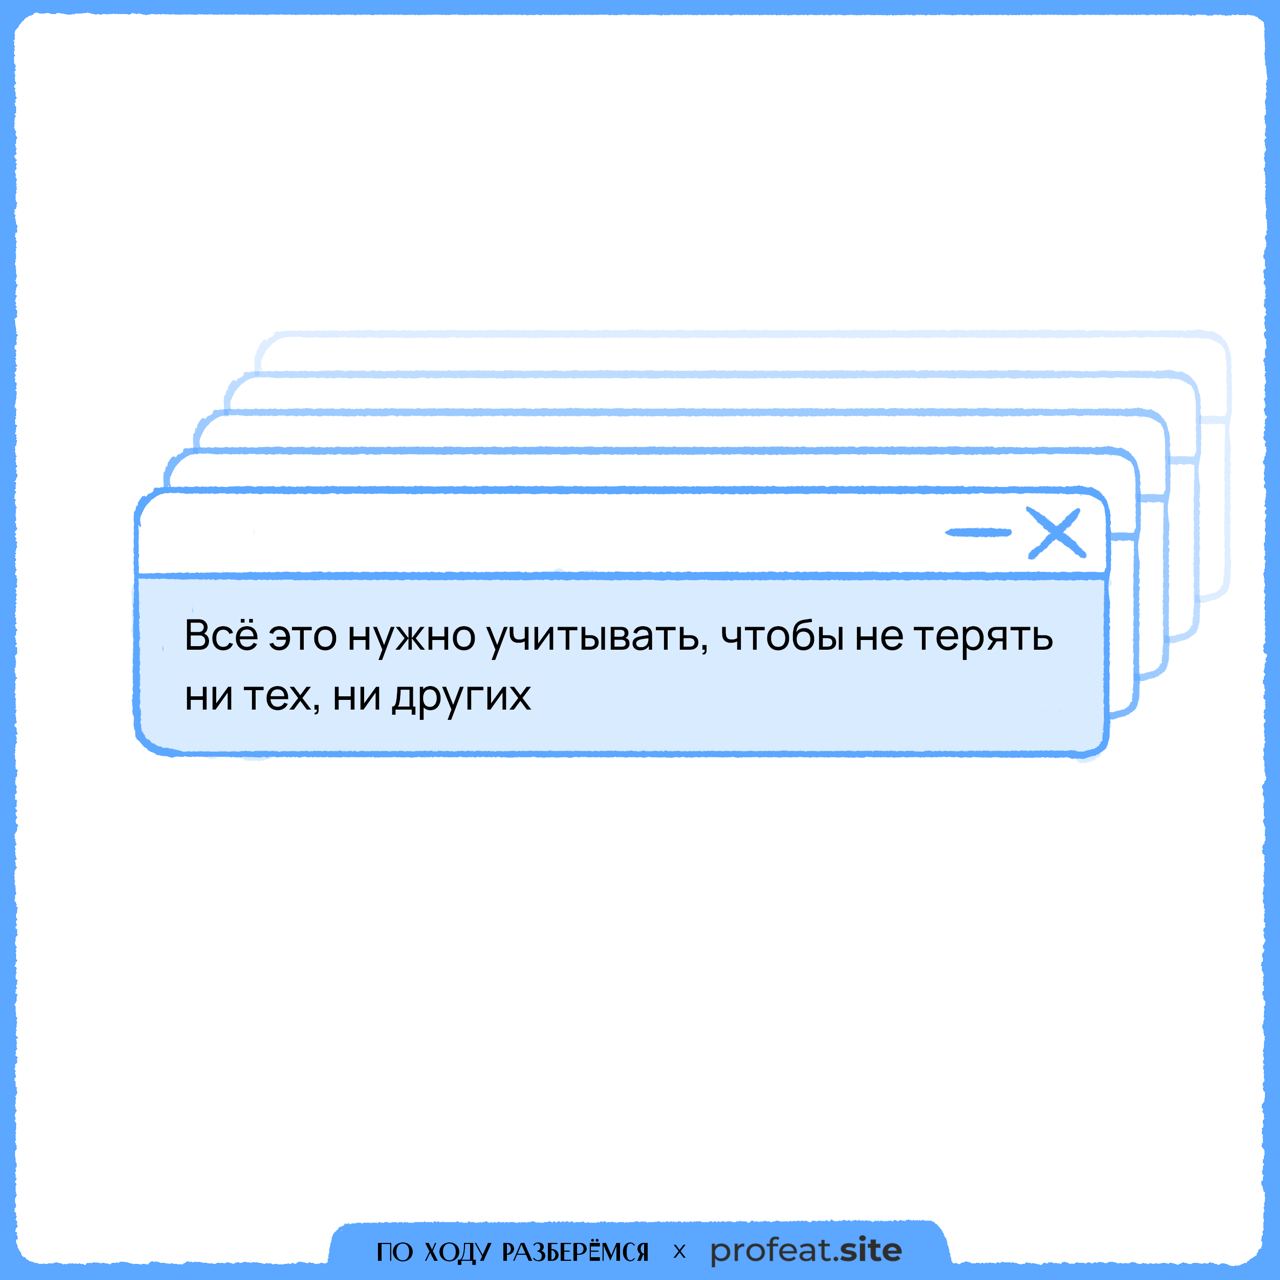 Телеграмм как пишется по русски фото 77